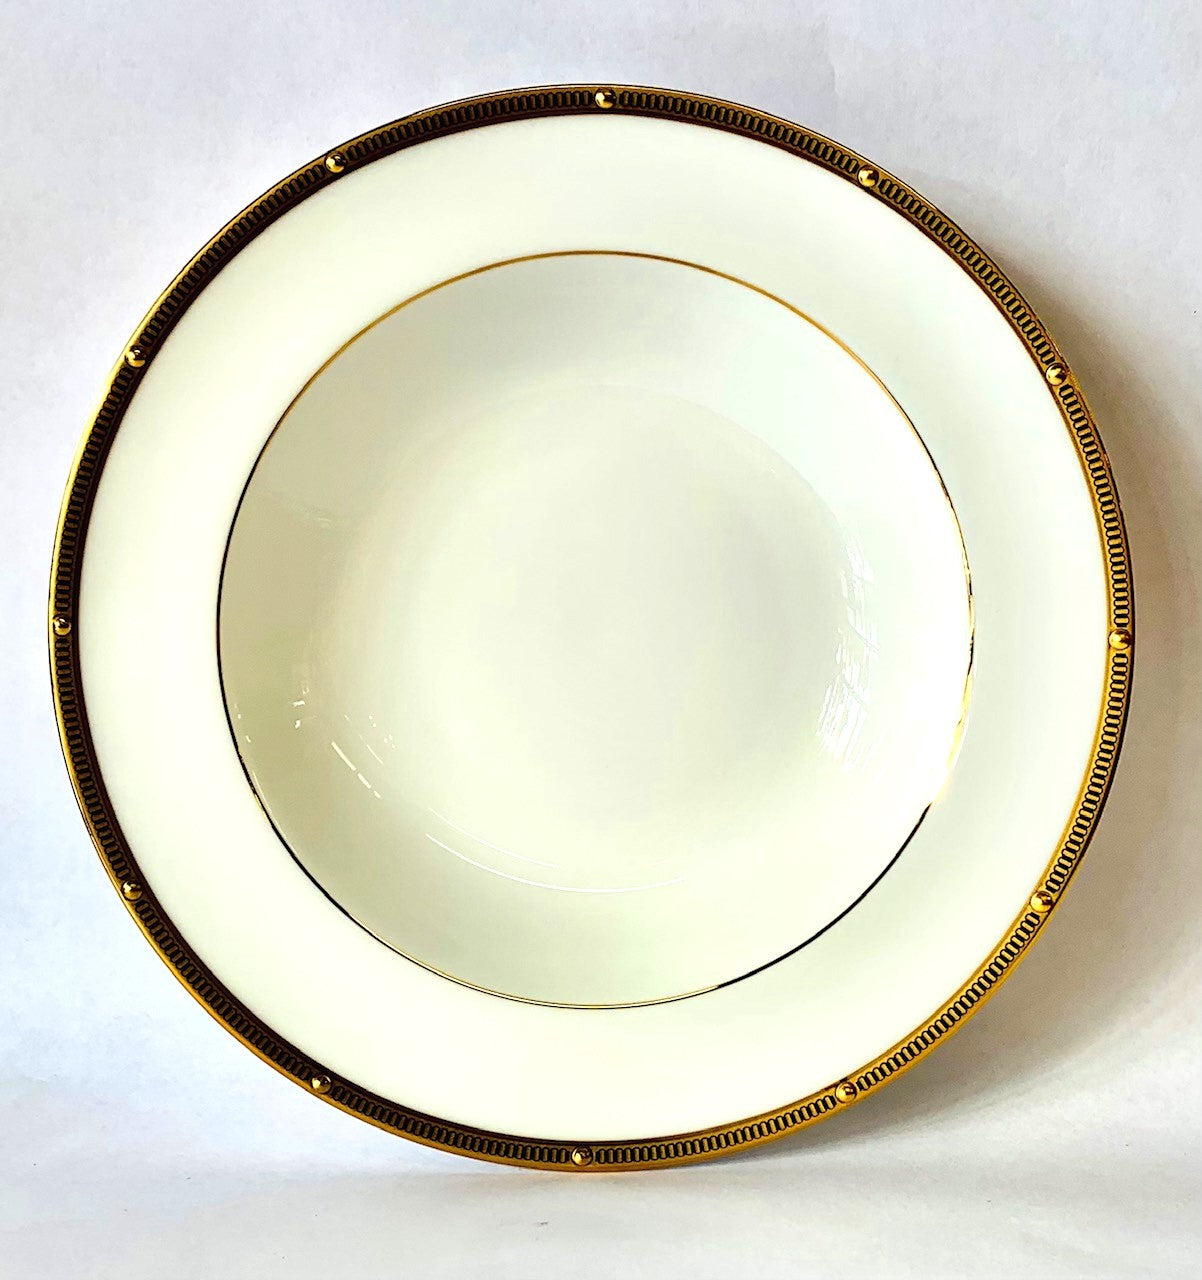 Noritake Rochelle Gold Soup Bowl 12oz. Bone China, 8.5"diameter - Royal Gift